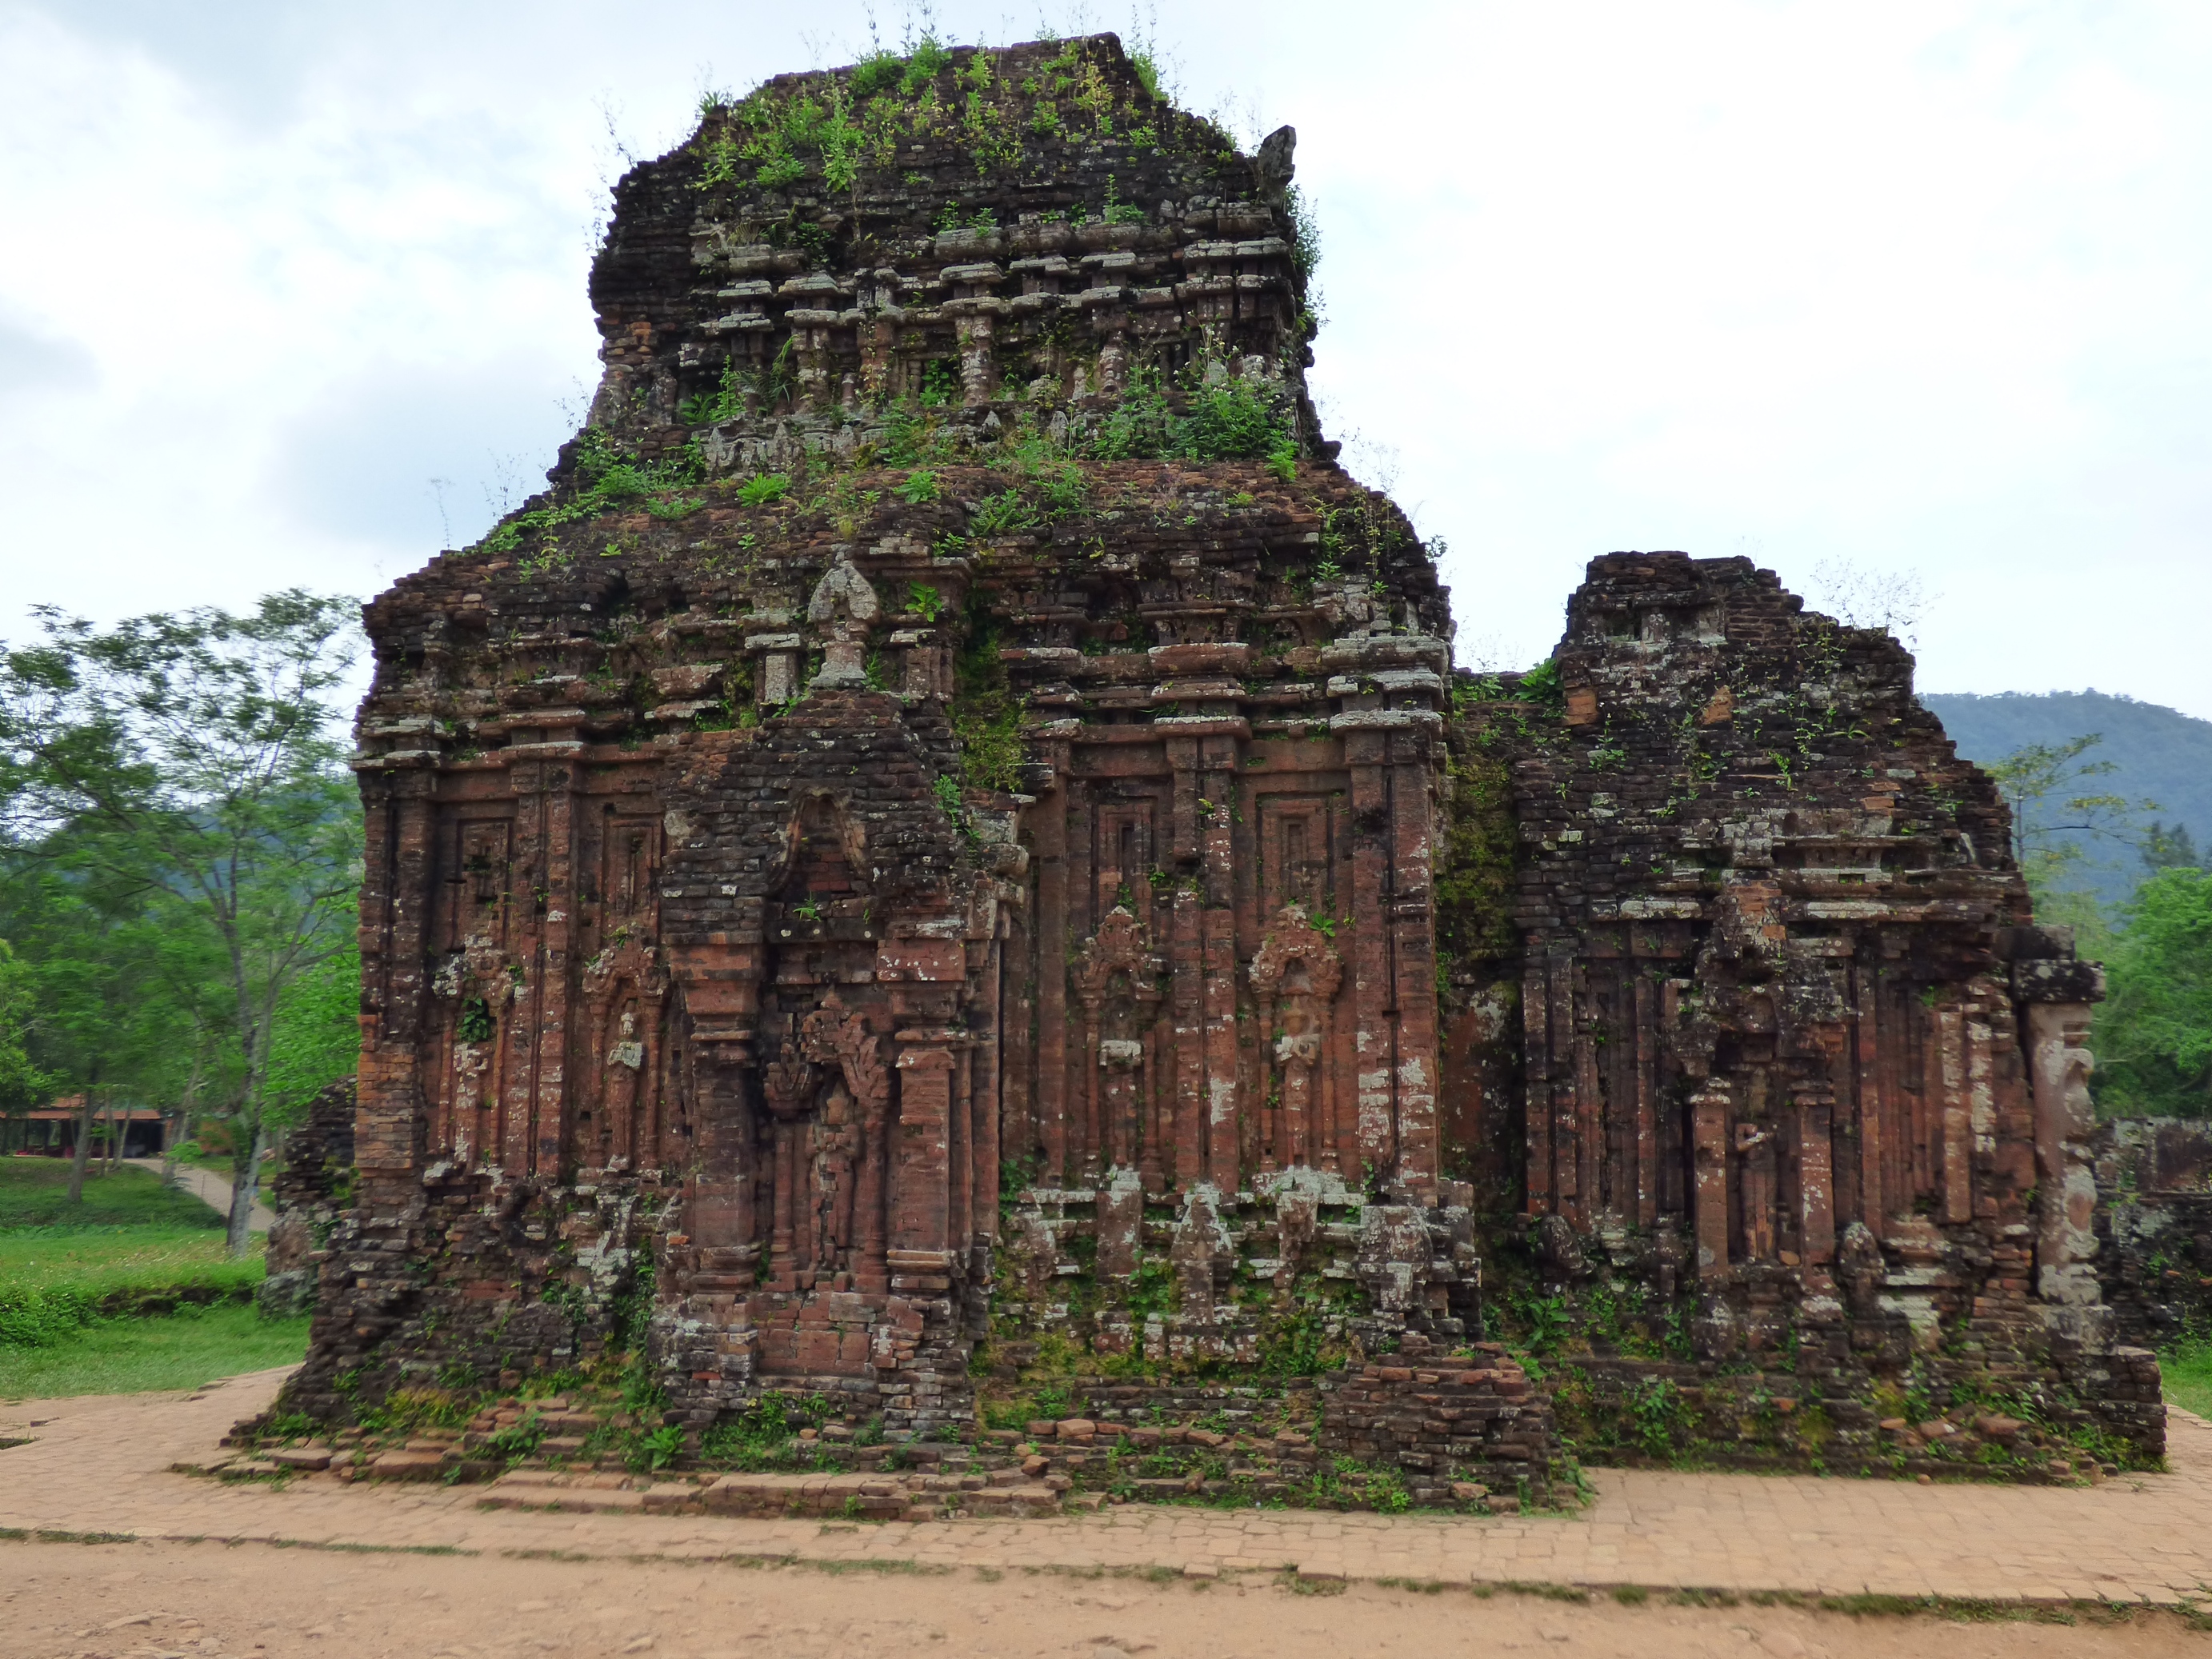 A burjánzó növényzet omlasztja az 1500 éves templomokat.